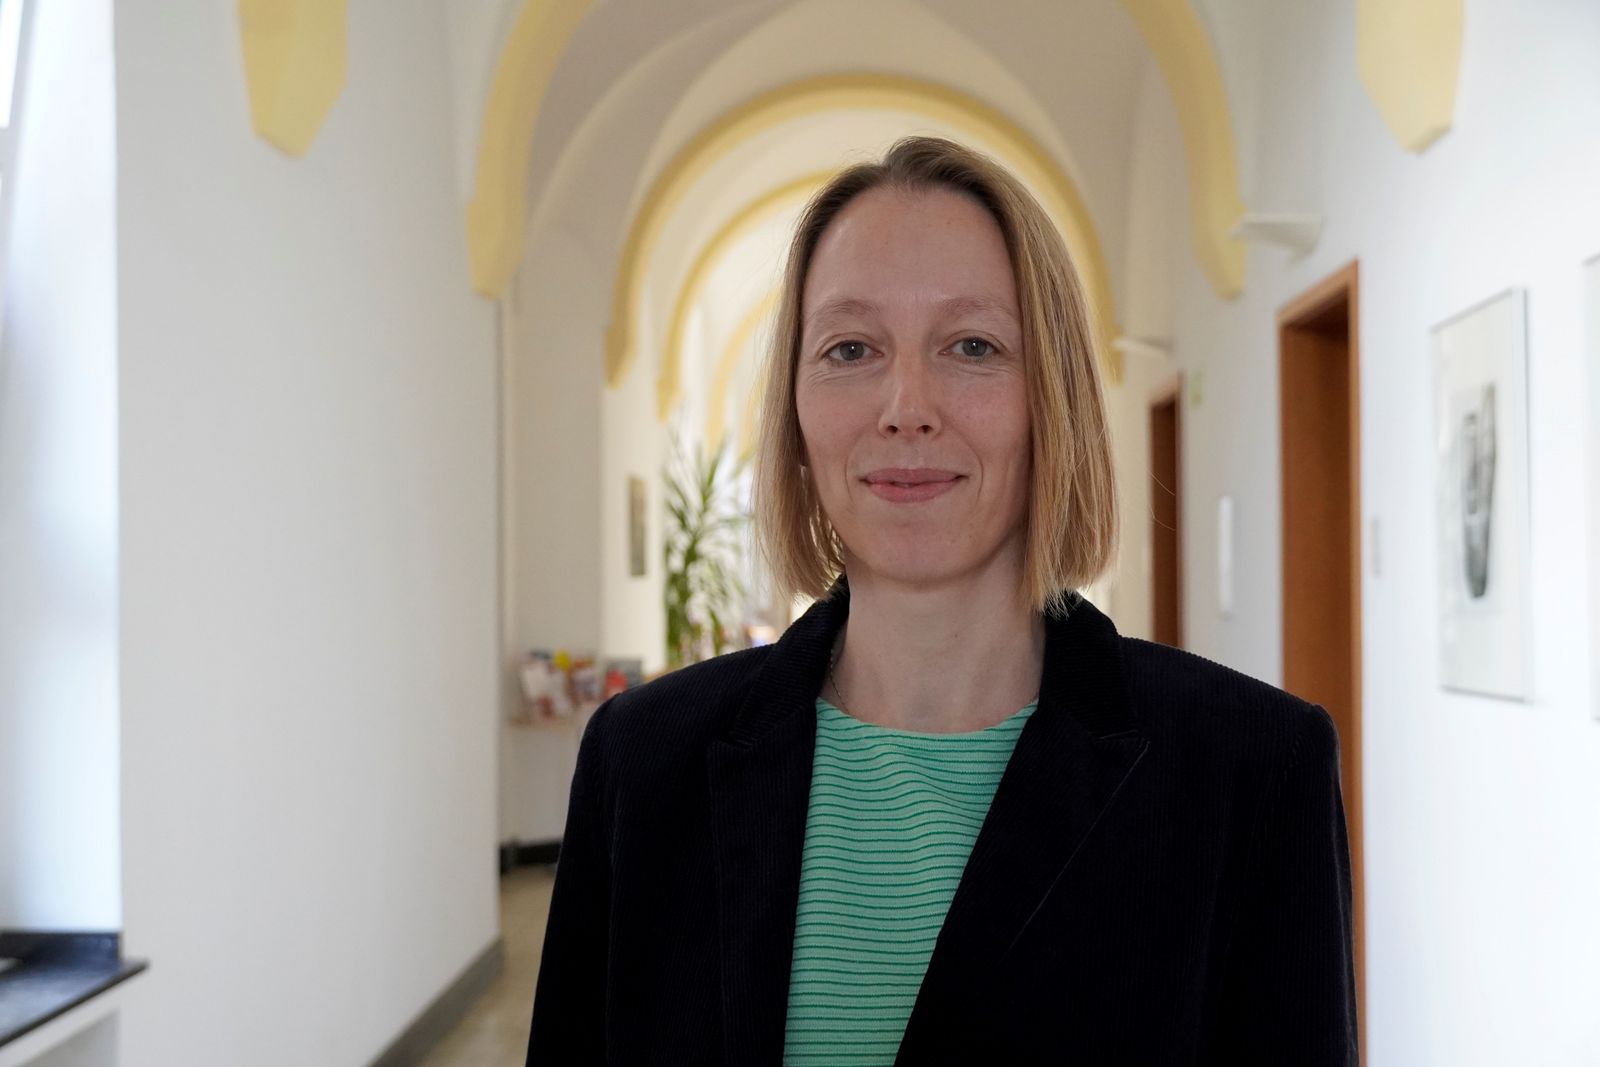 Frau Dr. med. Geyer, Fachärztin für Psychiatrie und Psychotherapie bei der Alexianer Köln GmbH